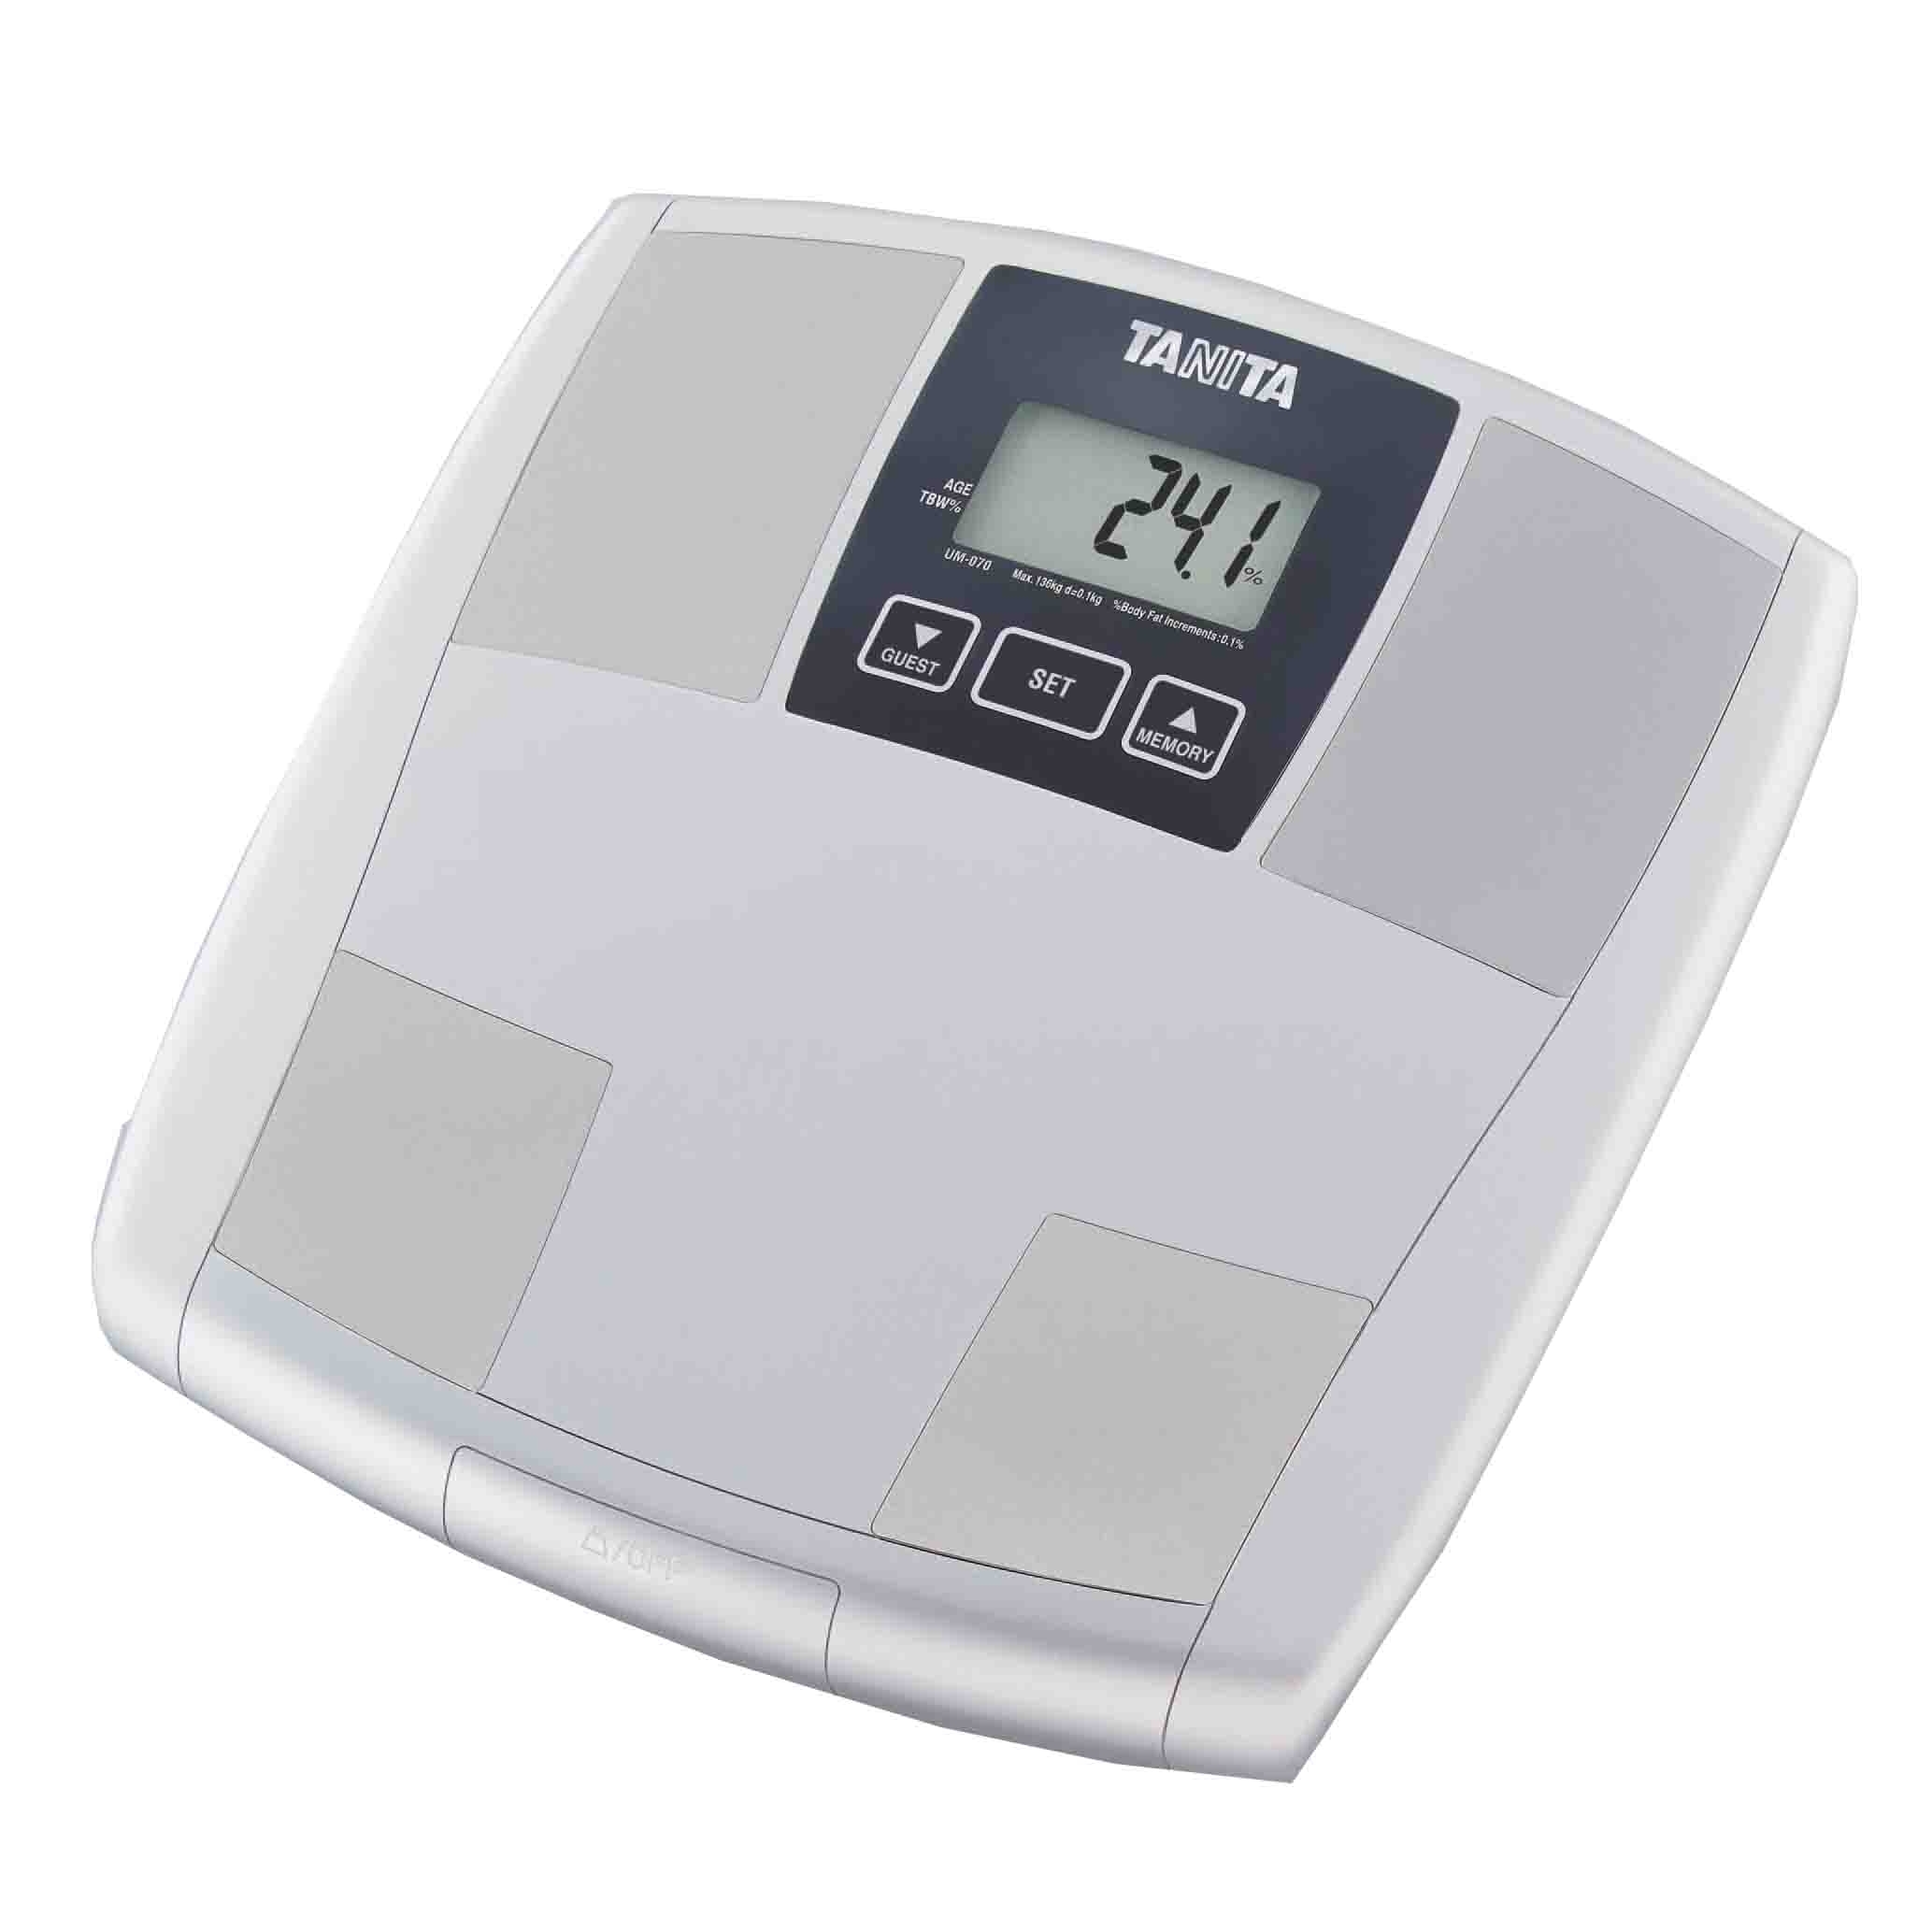 ميزان تانيتا المتطور لقياس الوزن ونسب الدهون والعضلات -UM-070 أبيض